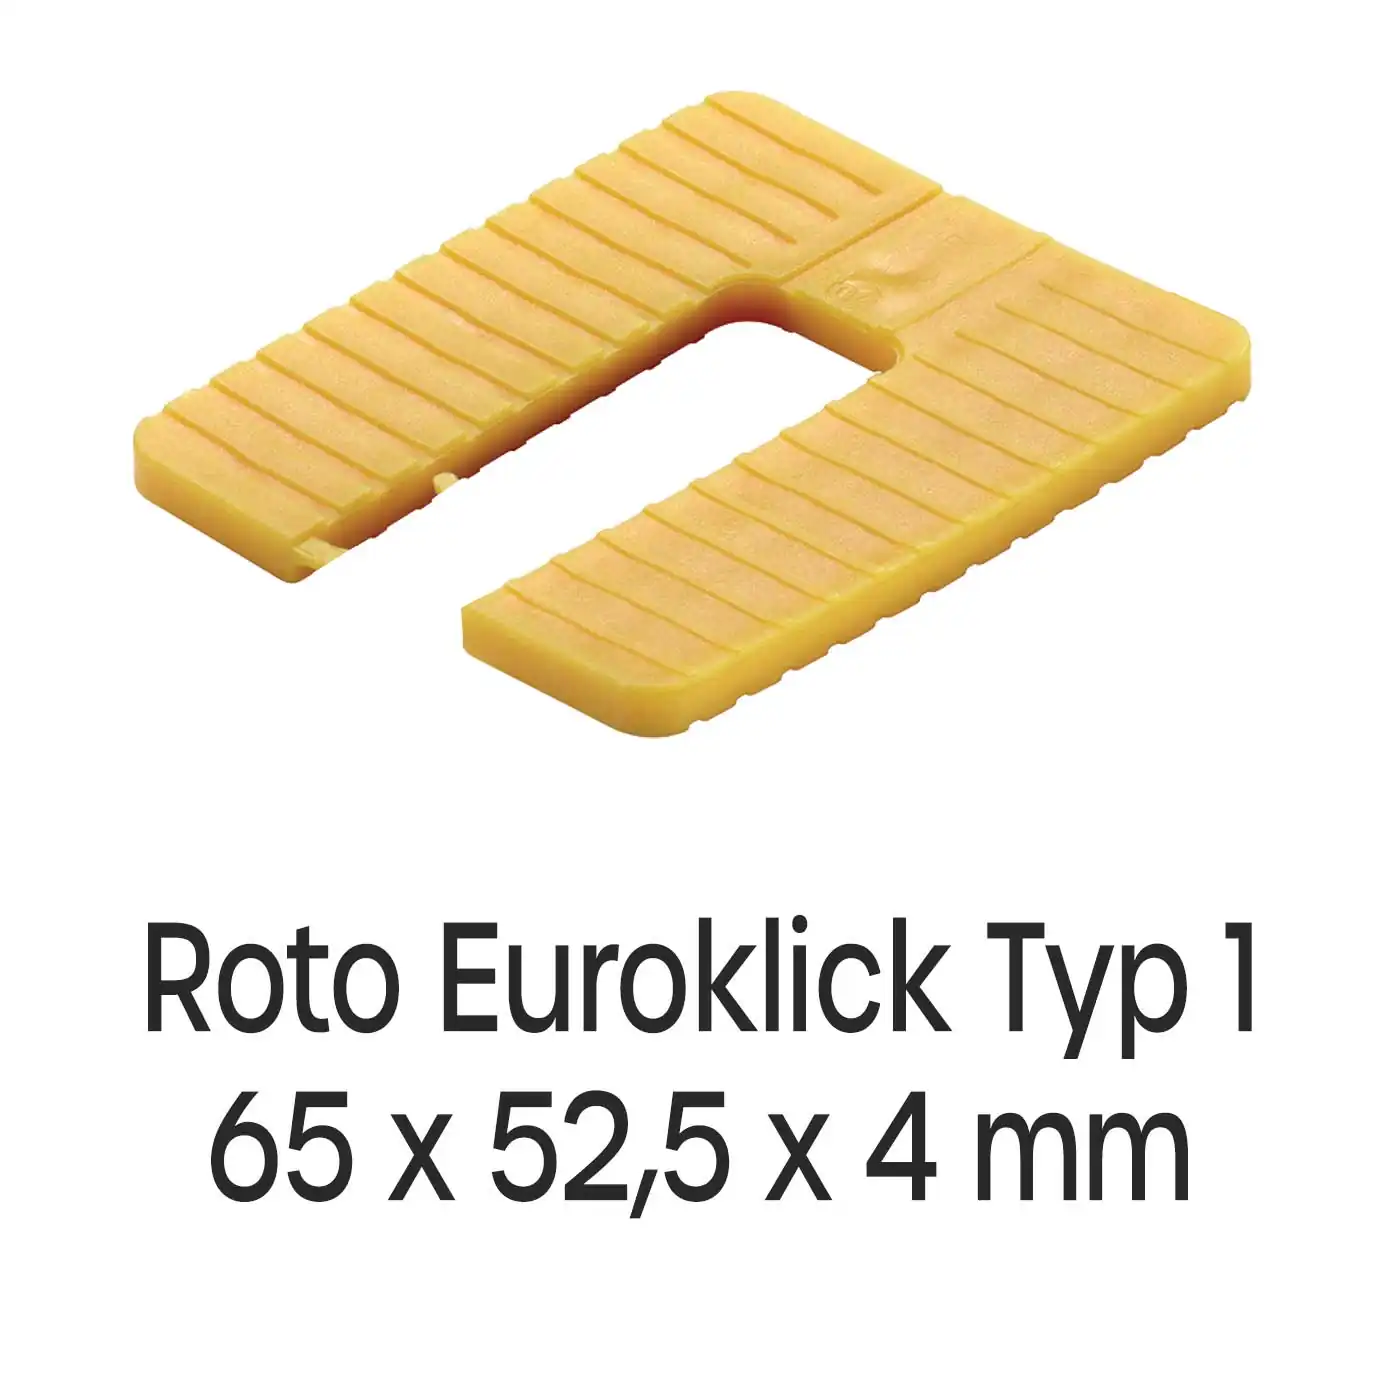 Distanzplatten Roto Euroklick Typ 1 65 x 52,5 x 4 mm 1000 Stück